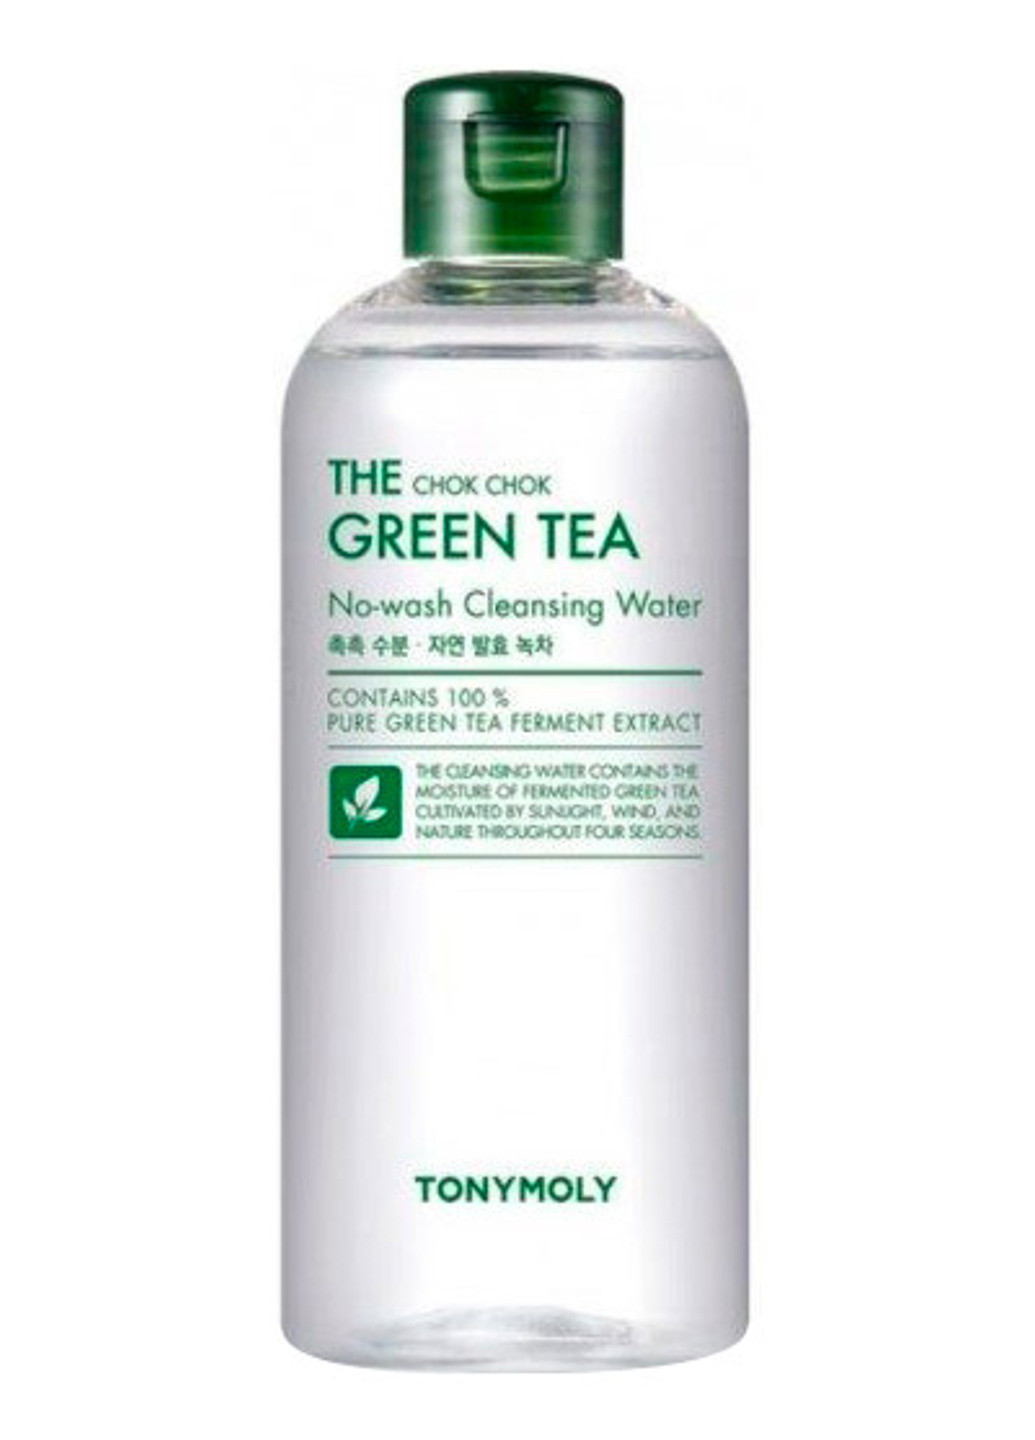 Вода очищающая с экстрактом зеленого чая The Chok Chok Green Tea No-wash Cleansing Water, 300 мл Tony Moly (202412737)